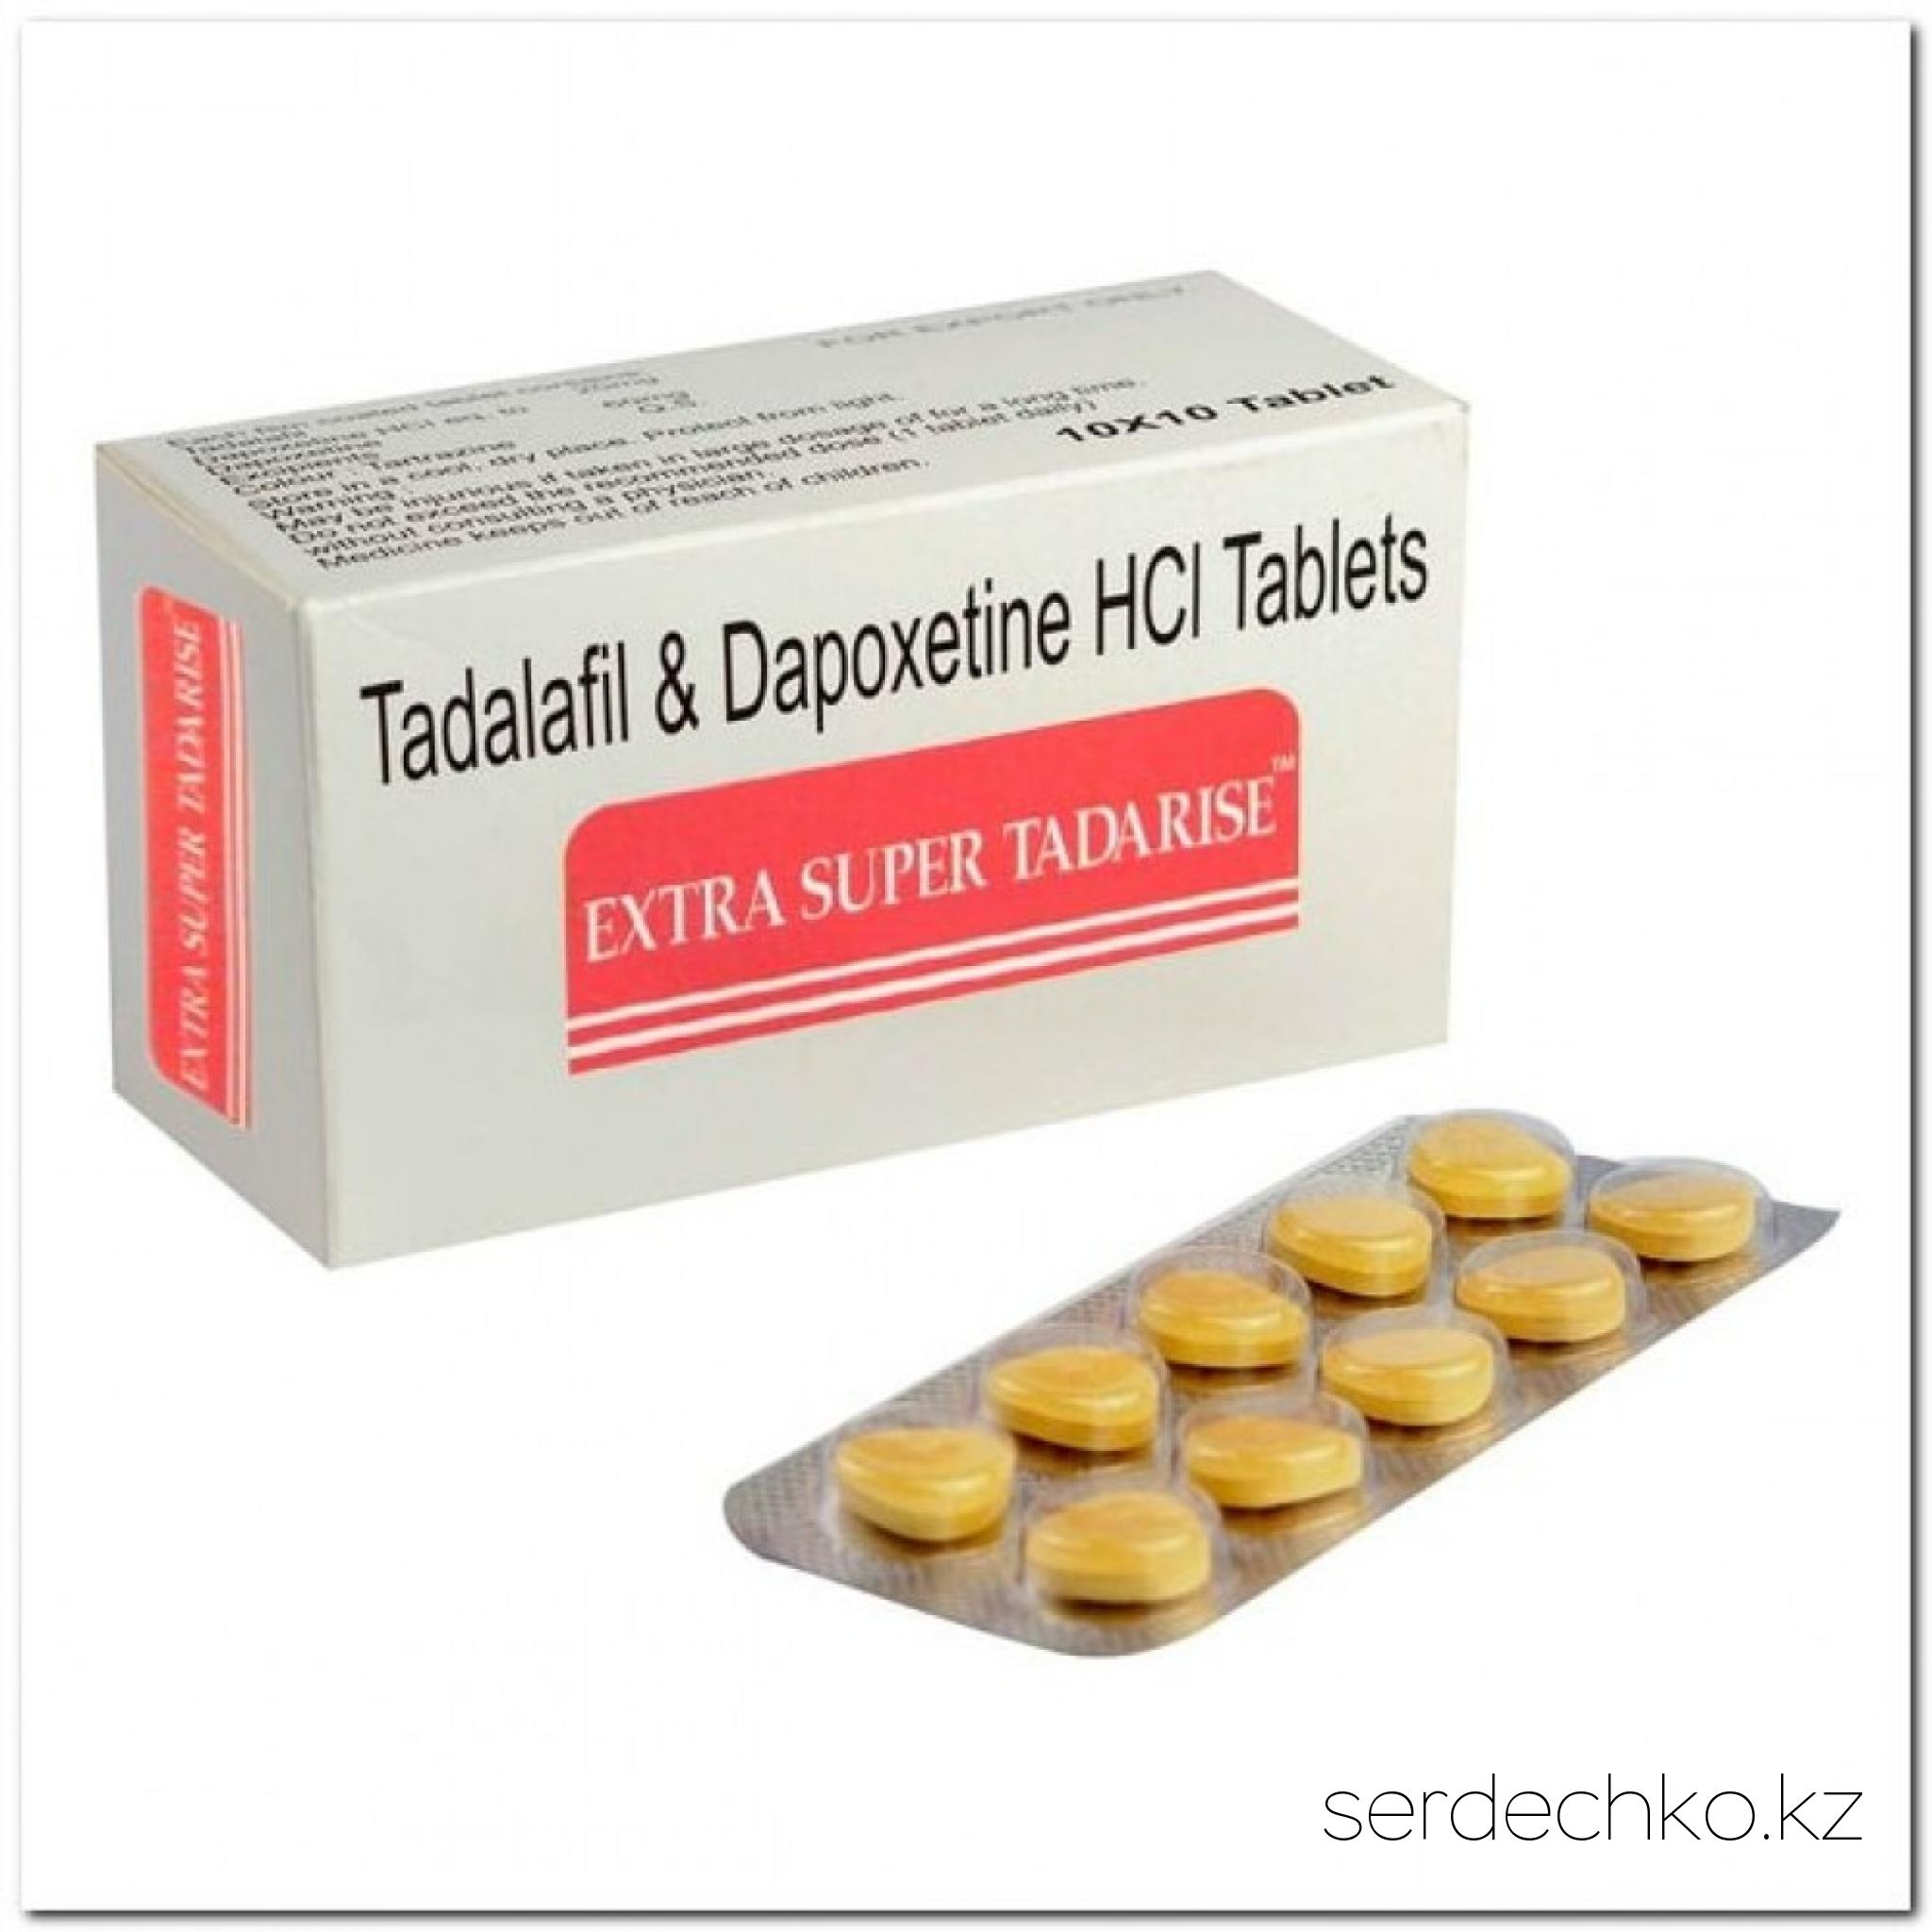 Extra Super Tadarise, 
	Extra Super Tadarise мужской возбудитель

	Супер Тадарайз – это средство, которое помогает продлить половой акт, способствует долгой и сильной эрекции на протяжение сексуального контакта.

	Состав:

	Препарат с двумя активными веществами: тадалафил (Сиалис) 40 мг + Дапоксетин 60 мг.

	Тадалафил – это активное вещество Сиалис, который улучшает кровообращение в сосудах полового члена, обеспечивая наполнение пещеристых тел кровью в полном объеме. При этом тадалафил – это не возбудитель, он не способствует появлению эрекции из ничего на пустом месте, а лишь существенно помогает и восстанавливает вышедший из строя эректильный механизм. Эрекция возникает совершенно естественно, во время любовных ласк или стимуляции. Таким образом, препарат дает возможность вести нормальную половую жизнь, предоставляя право выбора момента близости самому мужчине.

	Дапоксетин – профилактика преждевременной эякуляции. Дапоксетин отдаляет наступление оргазма, что позволяет ощутимо продлить половой акт, лечит мужское бессилие, то есть придает половому члену твердость и силу.

	Одновременное действие этих двух активных компонентов, способствует продолжительности полового акта, предохраняет от кратковременного эякуляции, придает сильную и долгую эрекцию. В результате действия таблетки вы гарантированно получите прекрасный качественный секс и полностью удовлетворенную партнершу.

	Действие:

	Супер Тадарайз, оказывает комплексное воздействие на организм мужчины. Во-первых, он позволяет забыть о самых серьезных нарушениях эрекции. Во-вторых, в состав препарата включено активное вещество Дапоксетин, которое решает вопрос  продления полового акта.

	Показания к применению:

	·       импотенция – как полная, так и частичная (те или иные нарушения эрекции разного происхождения: органического, психологического, смешанного);

	·       преждевременное семяизвержение;

	·       кроме того, препарат можно использовать для улучшения качества сексуальной жизни при отсутствии выраженных проблем с потенцией и эякуляцией.

	Инструкция по применению:

	Препарат принимают внутрь, запивая водой, за 30-60 минут до интимной близости. Суточная доза составляет 1 таблетка в сутки.  С алкоголем принимать не желательно.
